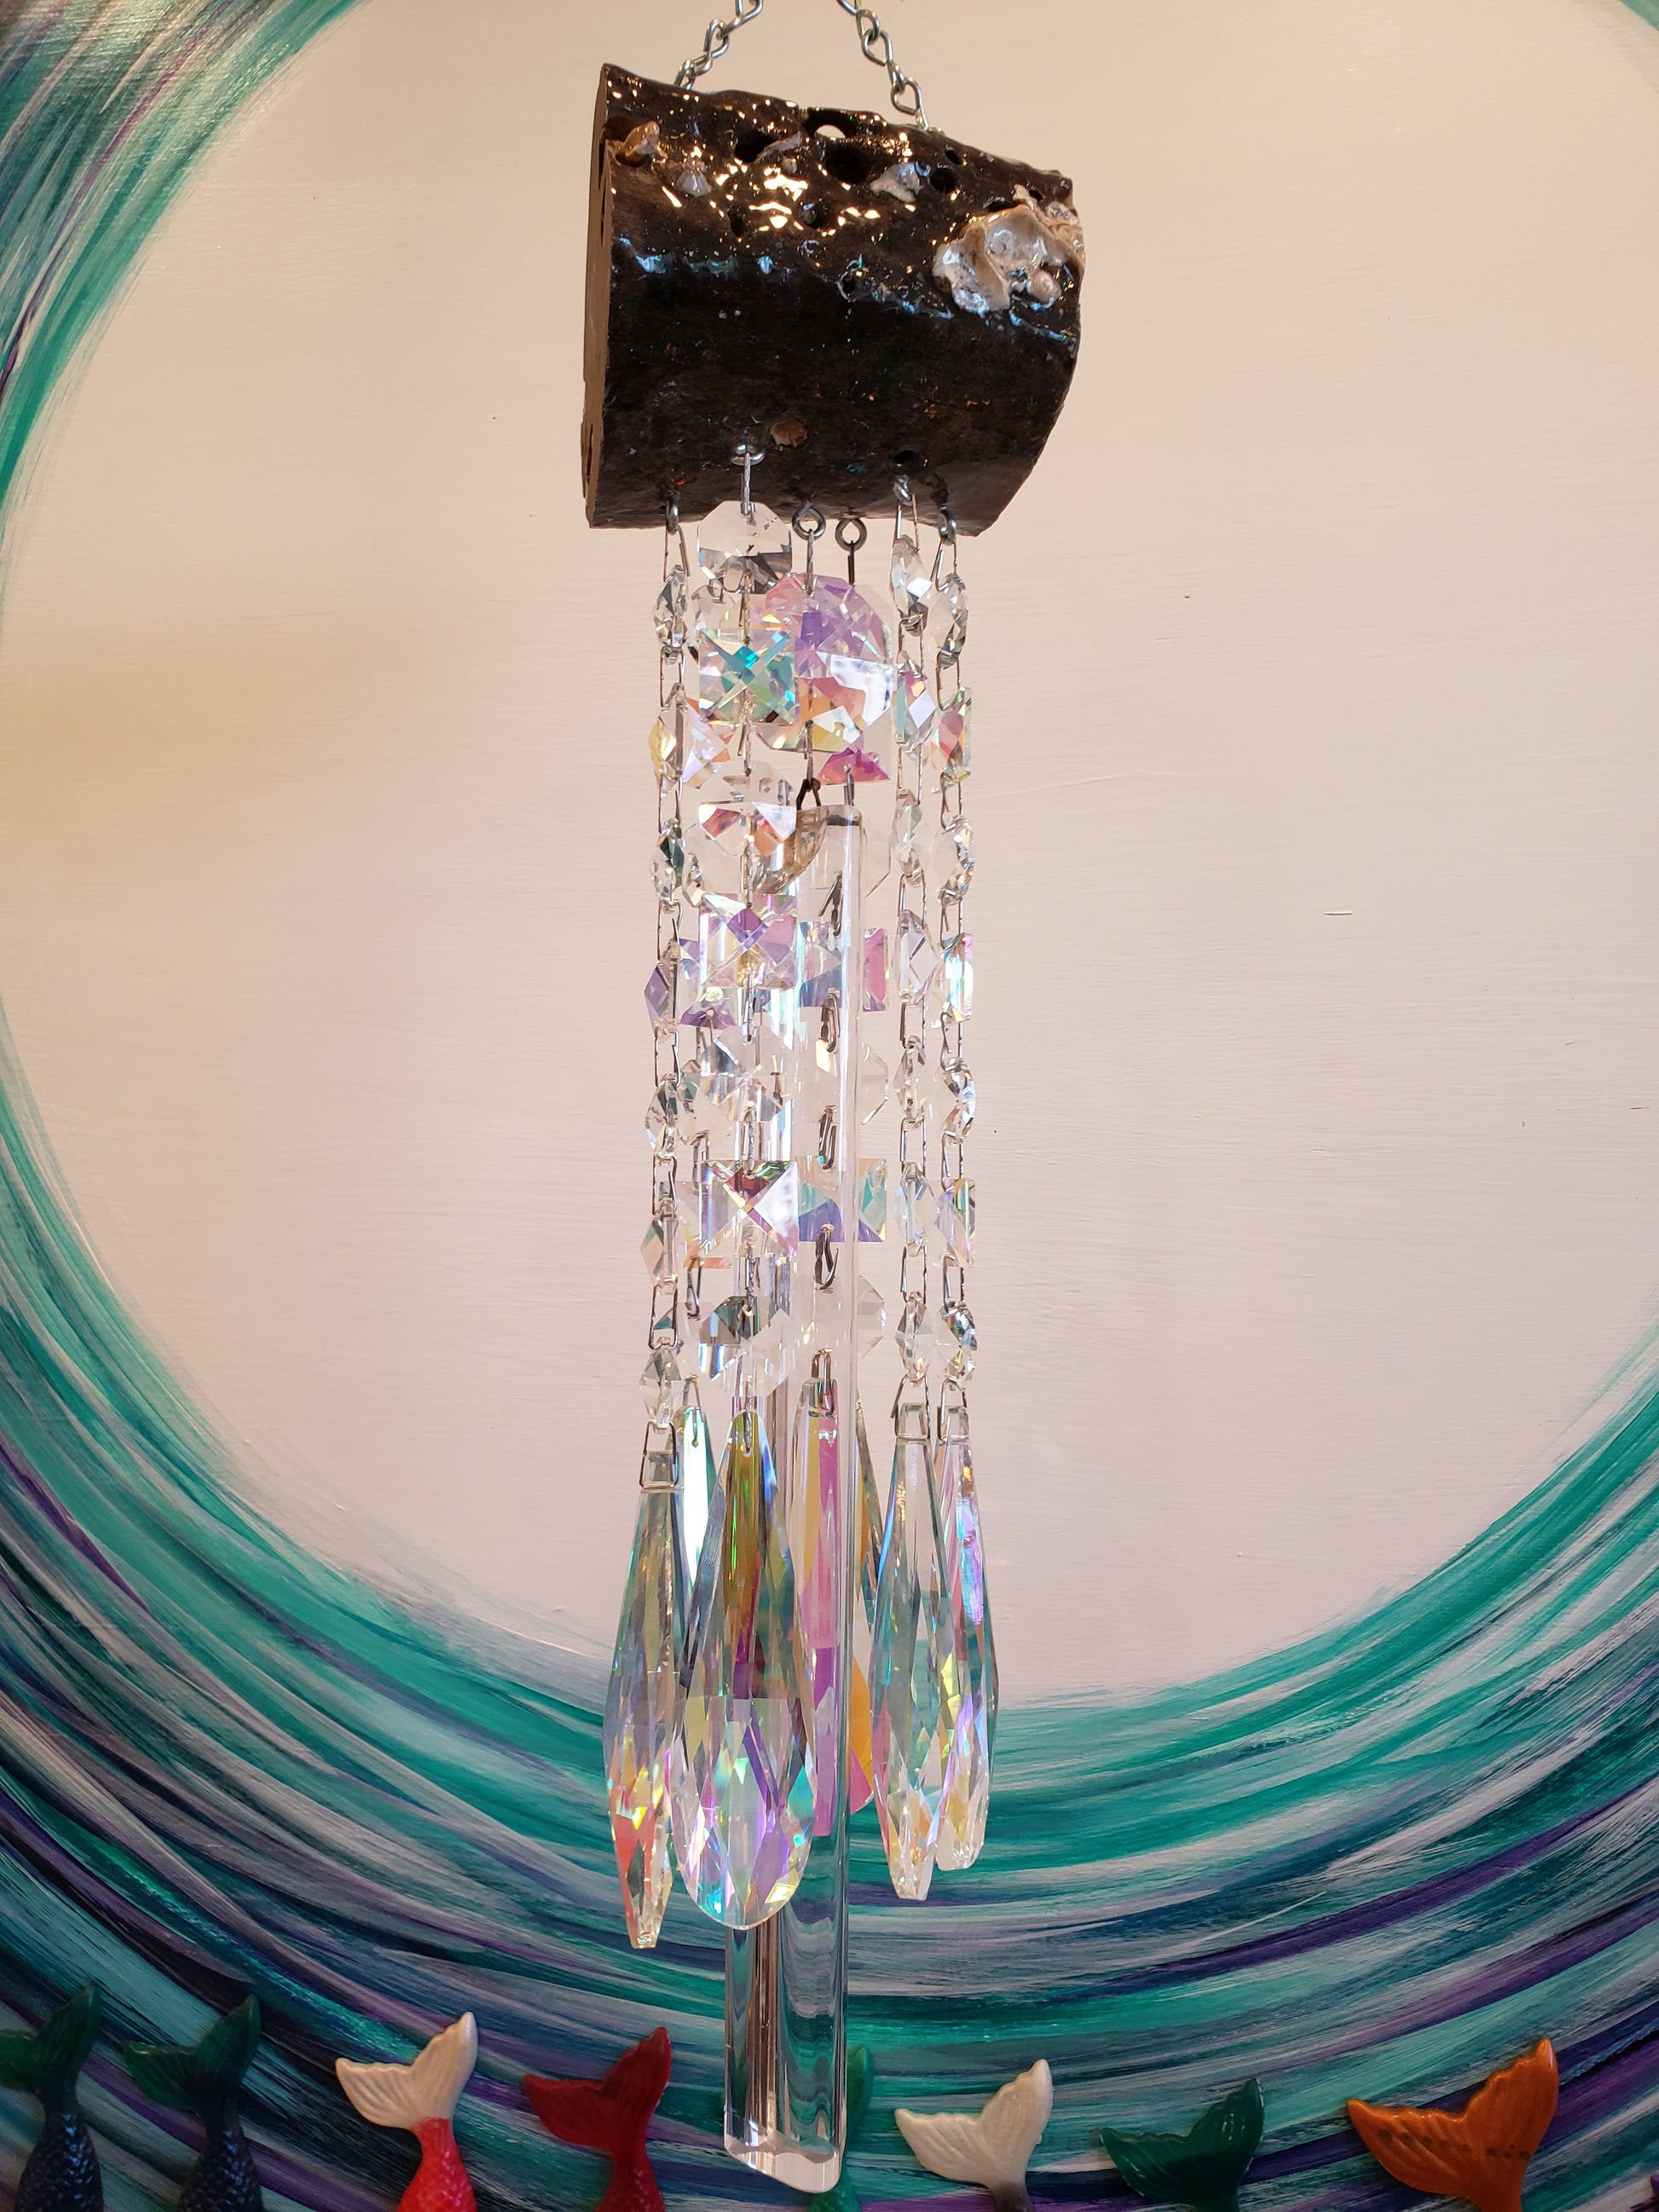 Chandelier crystal windchike suncatcher by Dazzling Driftwood